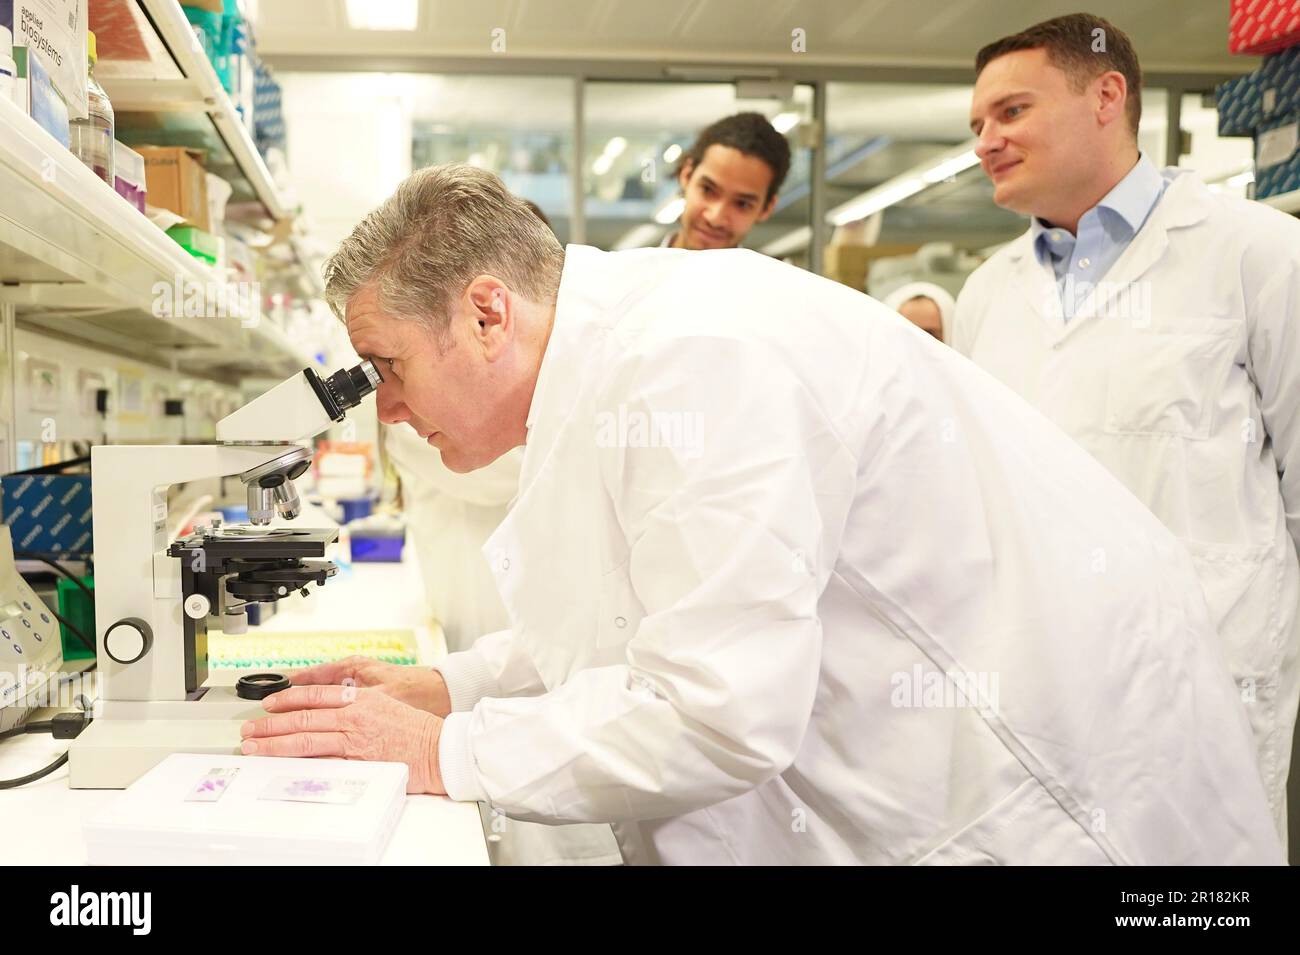 Leader del partito laburista Sir Keir Starmer guarda un tumore al polmone sotto un microscopio, con il segretario alla salute ombra Wes Streeting (a destra), durante una visita al Crick Institute, un istituto di ricerca biomedica, a Londra. Data immagine: Venerdì 12 maggio 2023. Foto Stock